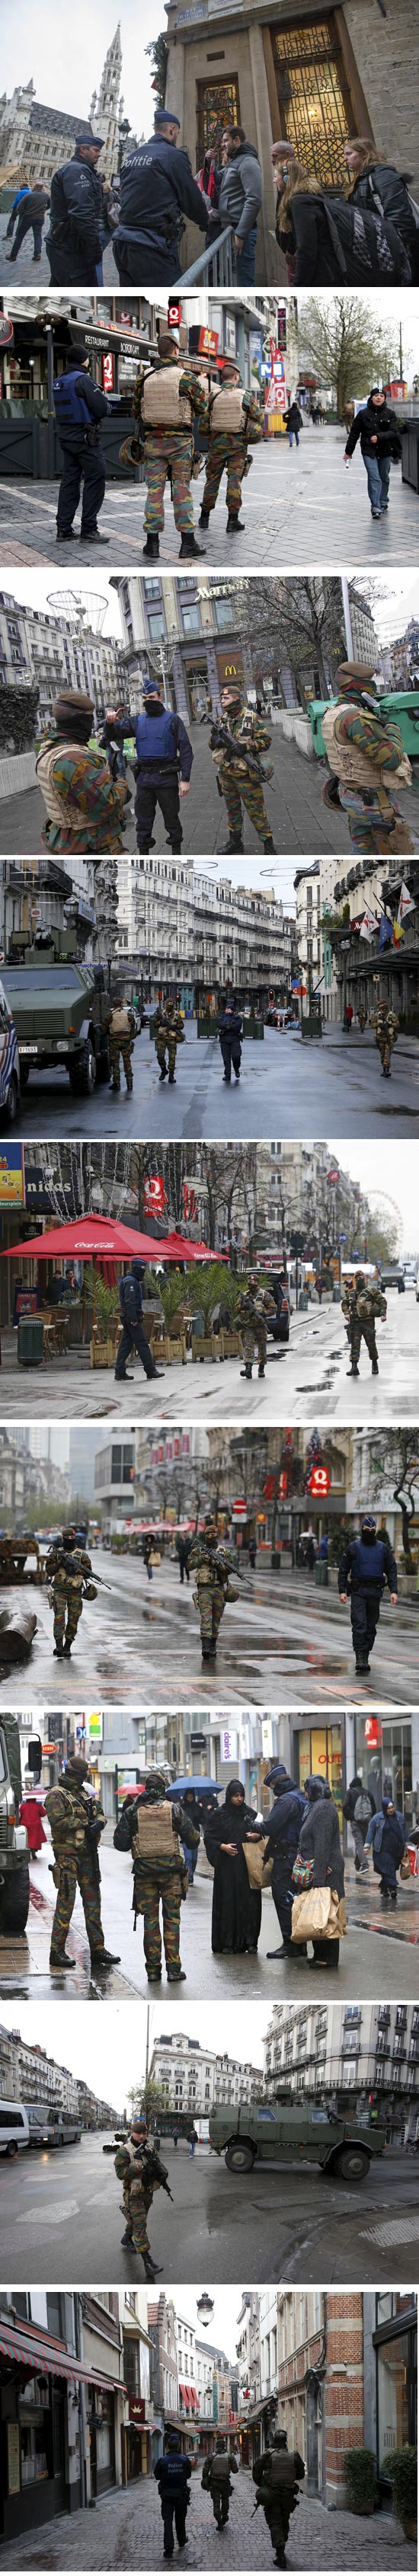 כוננות טרור בבריסל / צילום: רויטרס